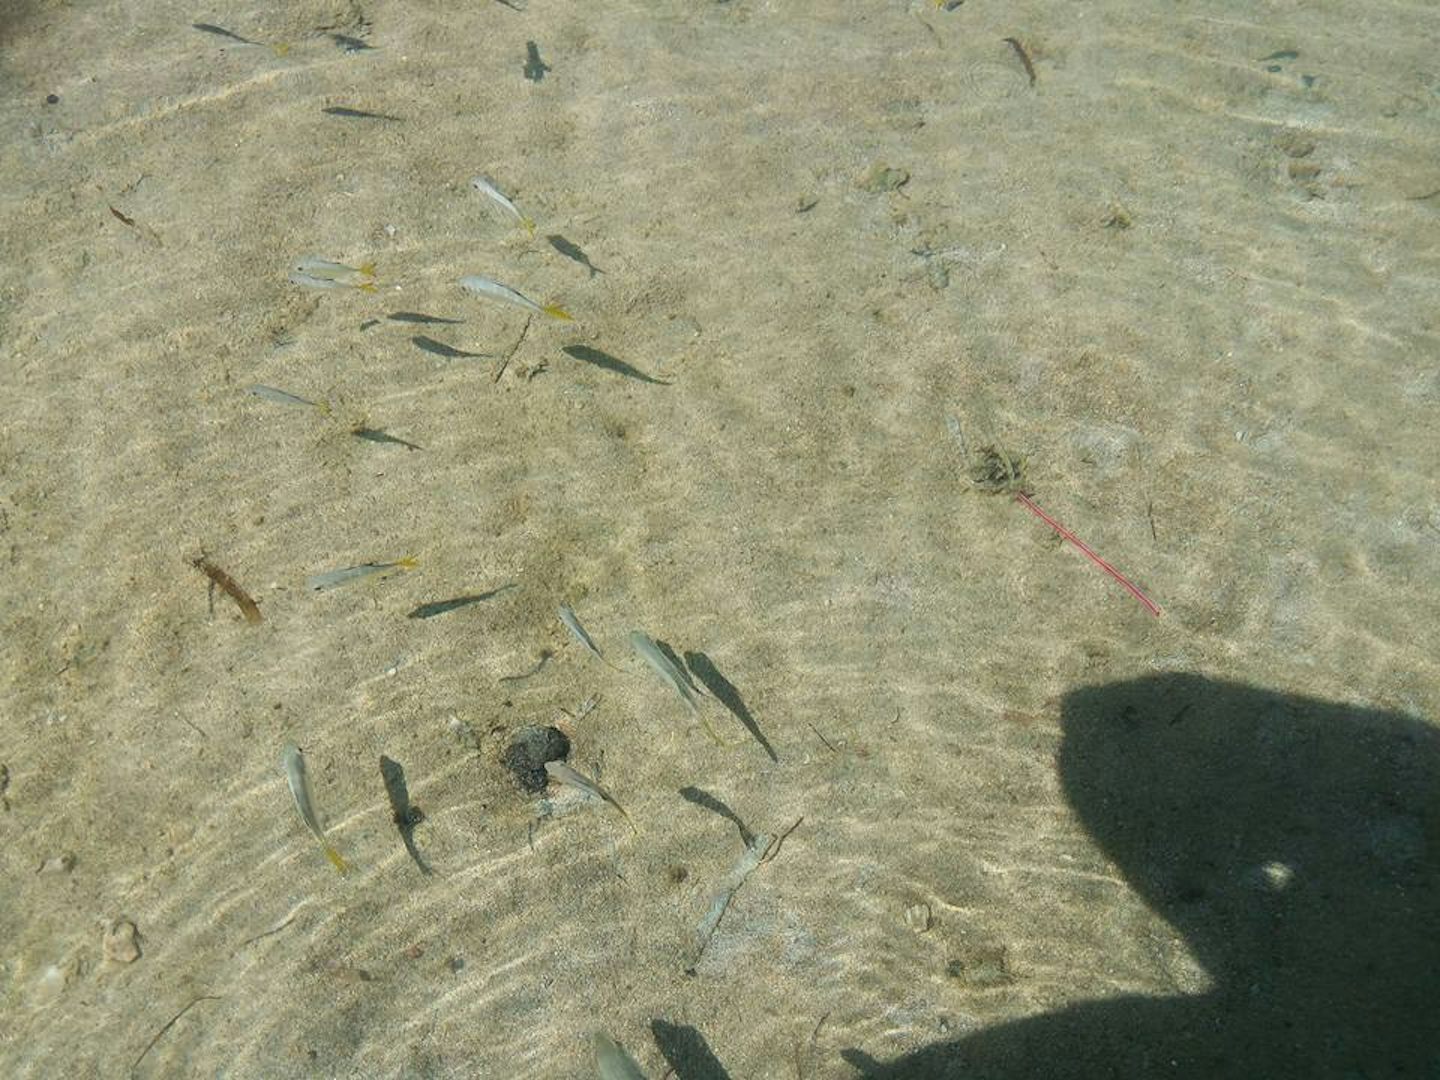 Fish at beach in San Juan